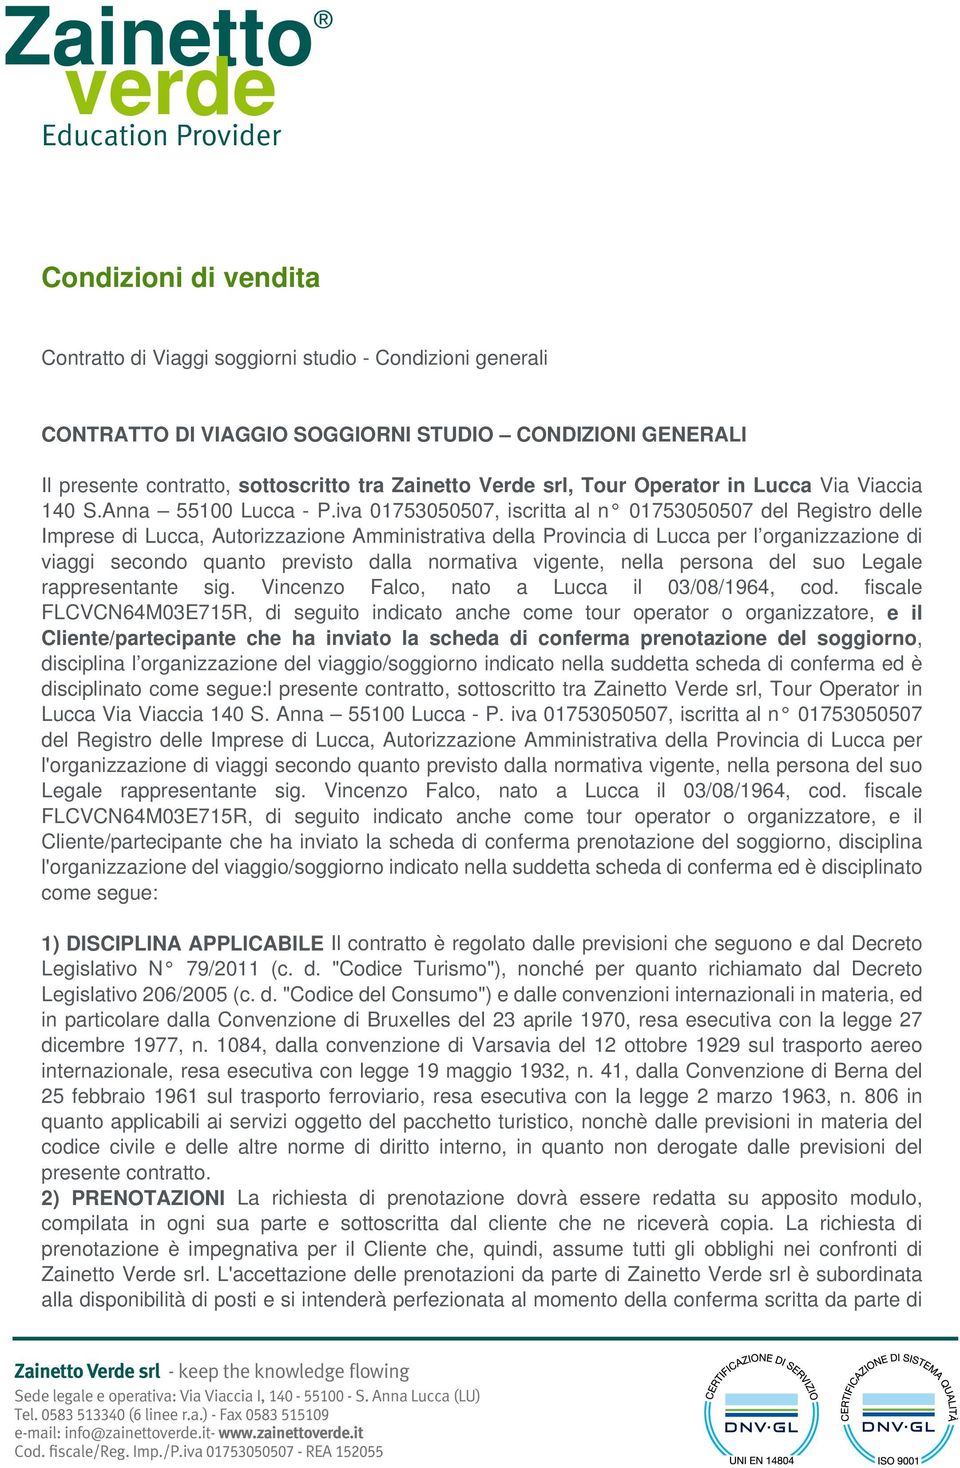 iva 01753050507, iscritta al n 01753050507 del Registro delle Imprese di Lucca, Autorizzazione Amministrativa della Provincia di Lucca per l organizzazione di viaggi secondo quanto previsto dalla